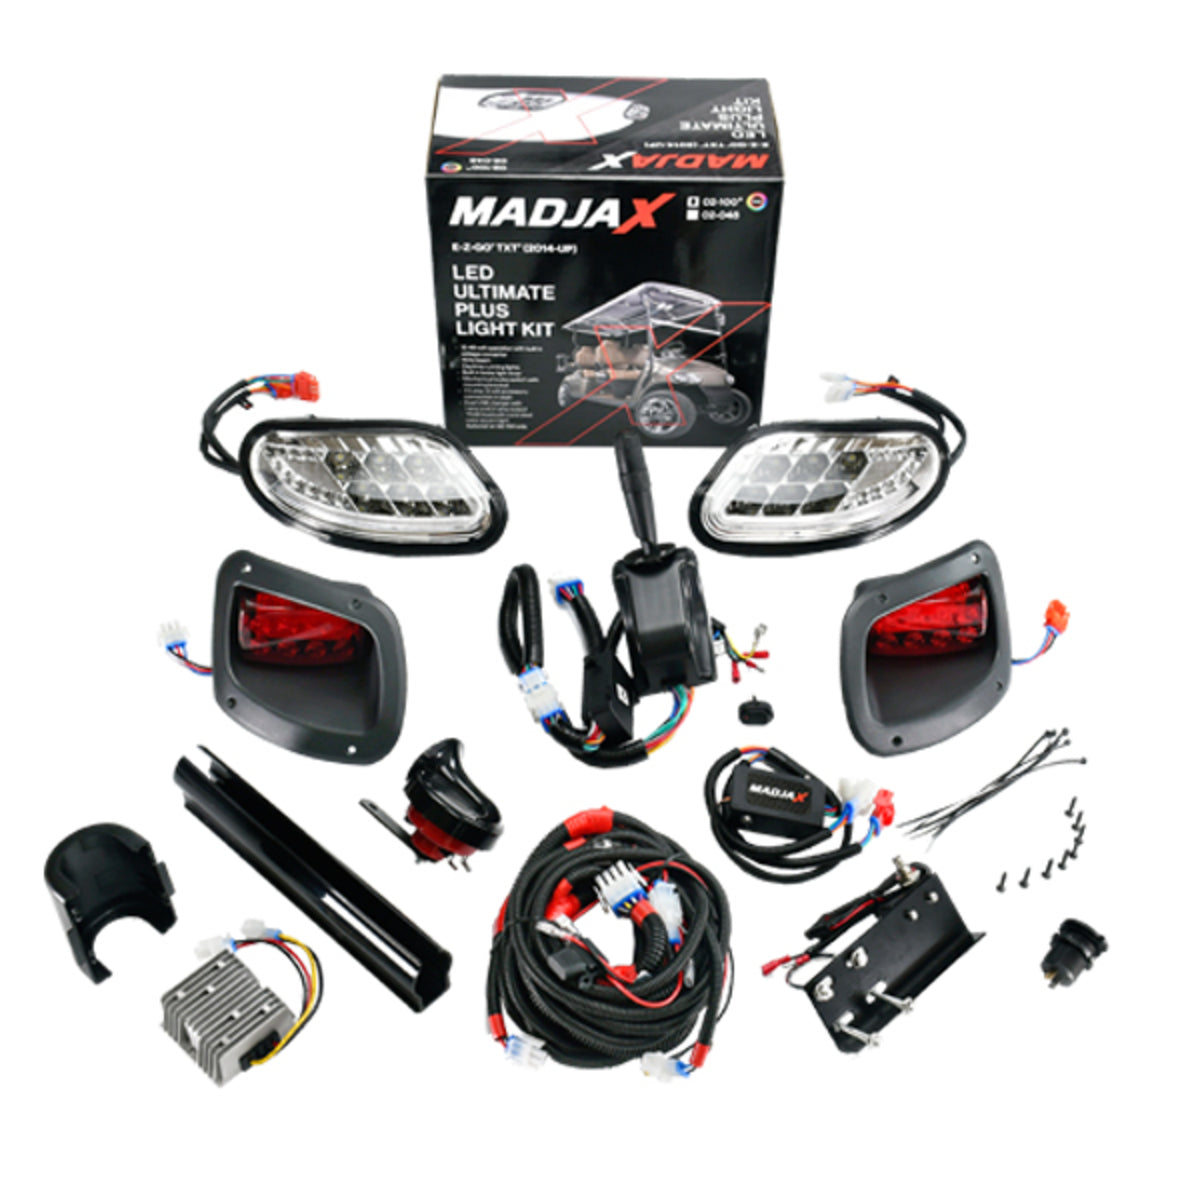 MadJax¬Æ RGB Ultimate Plus Light Kit "‚Äú E-Z-GO TXT/T48 (Years 2014-Up)